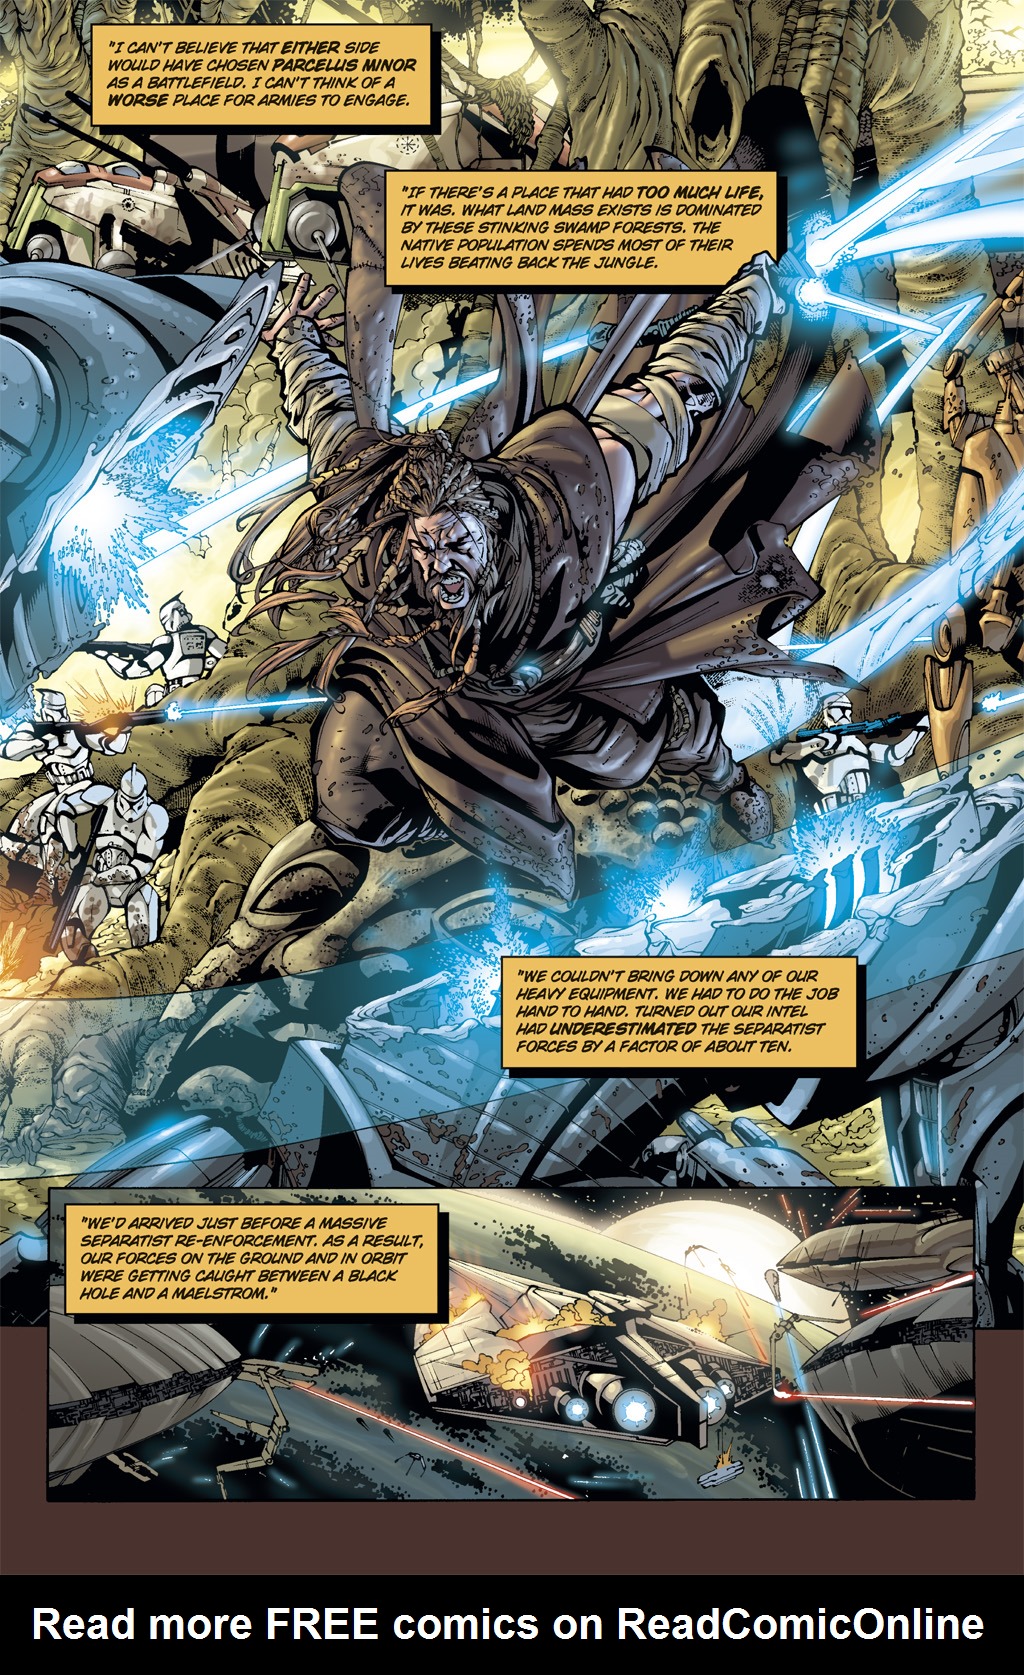 Read online Star Wars: Clone Wars comic -  Issue # TPB 5 - 21